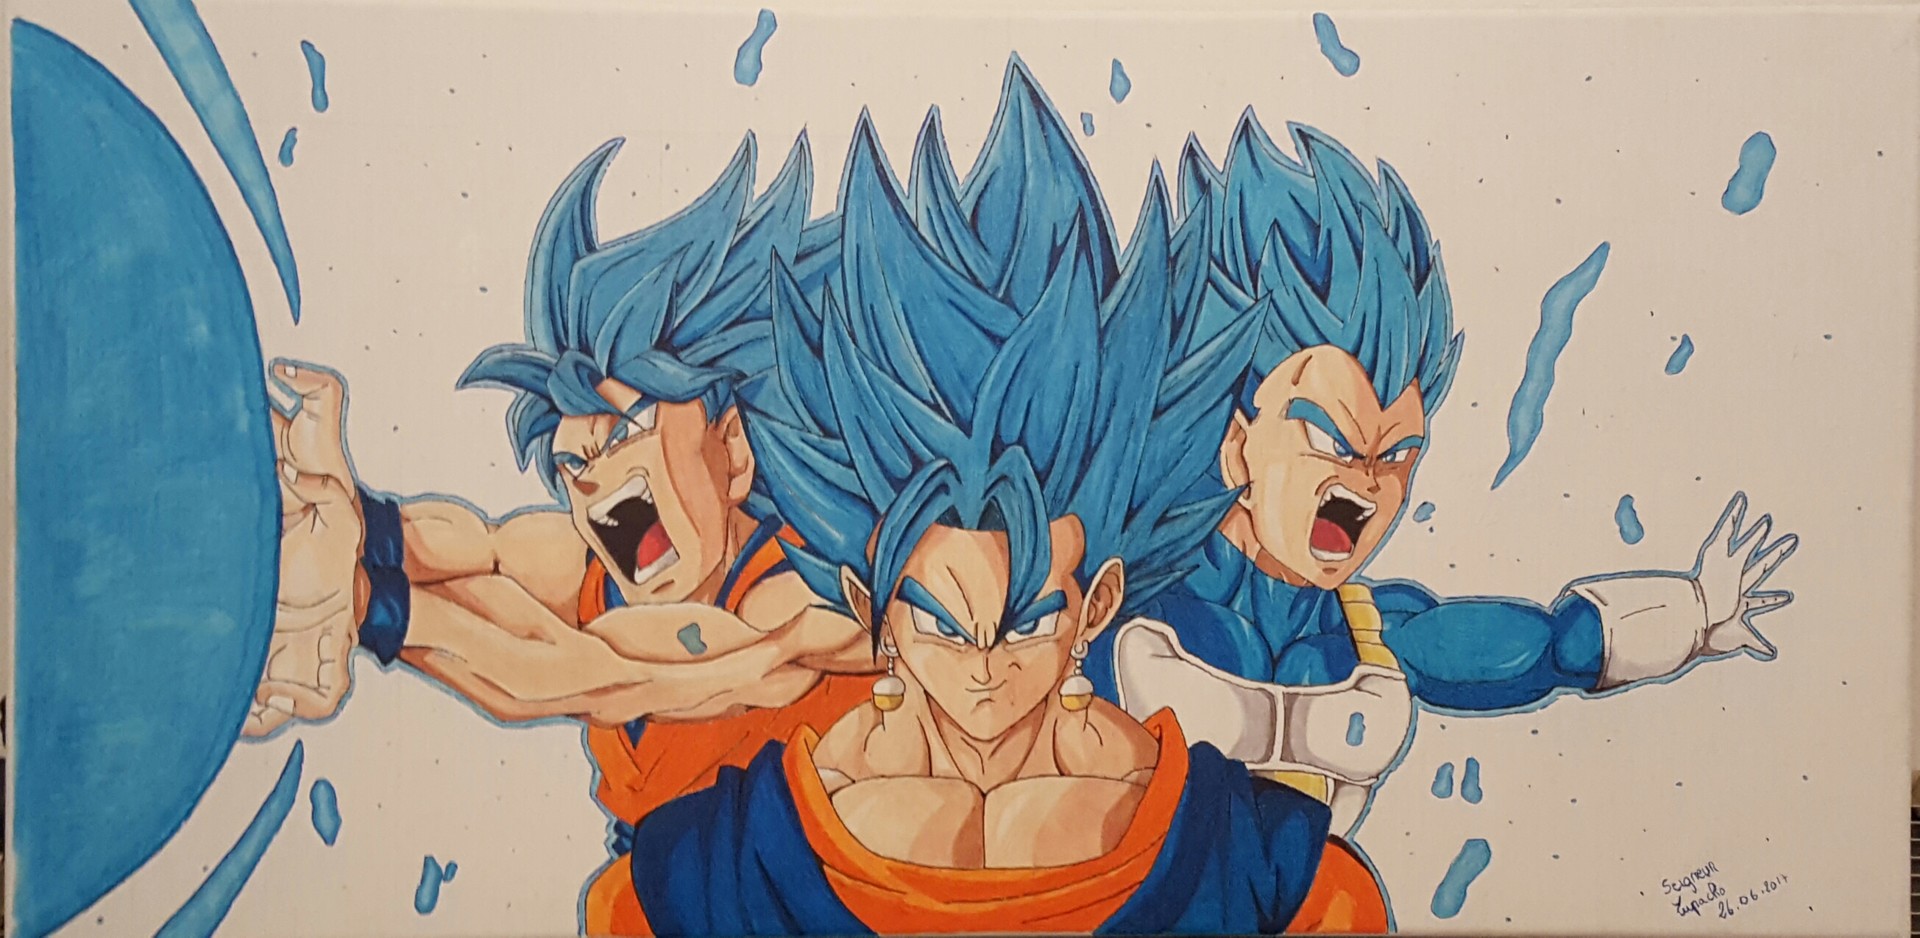 Fusion Goku Vegeta, Dibujo por Seigneur Lupacho | Artmajeur